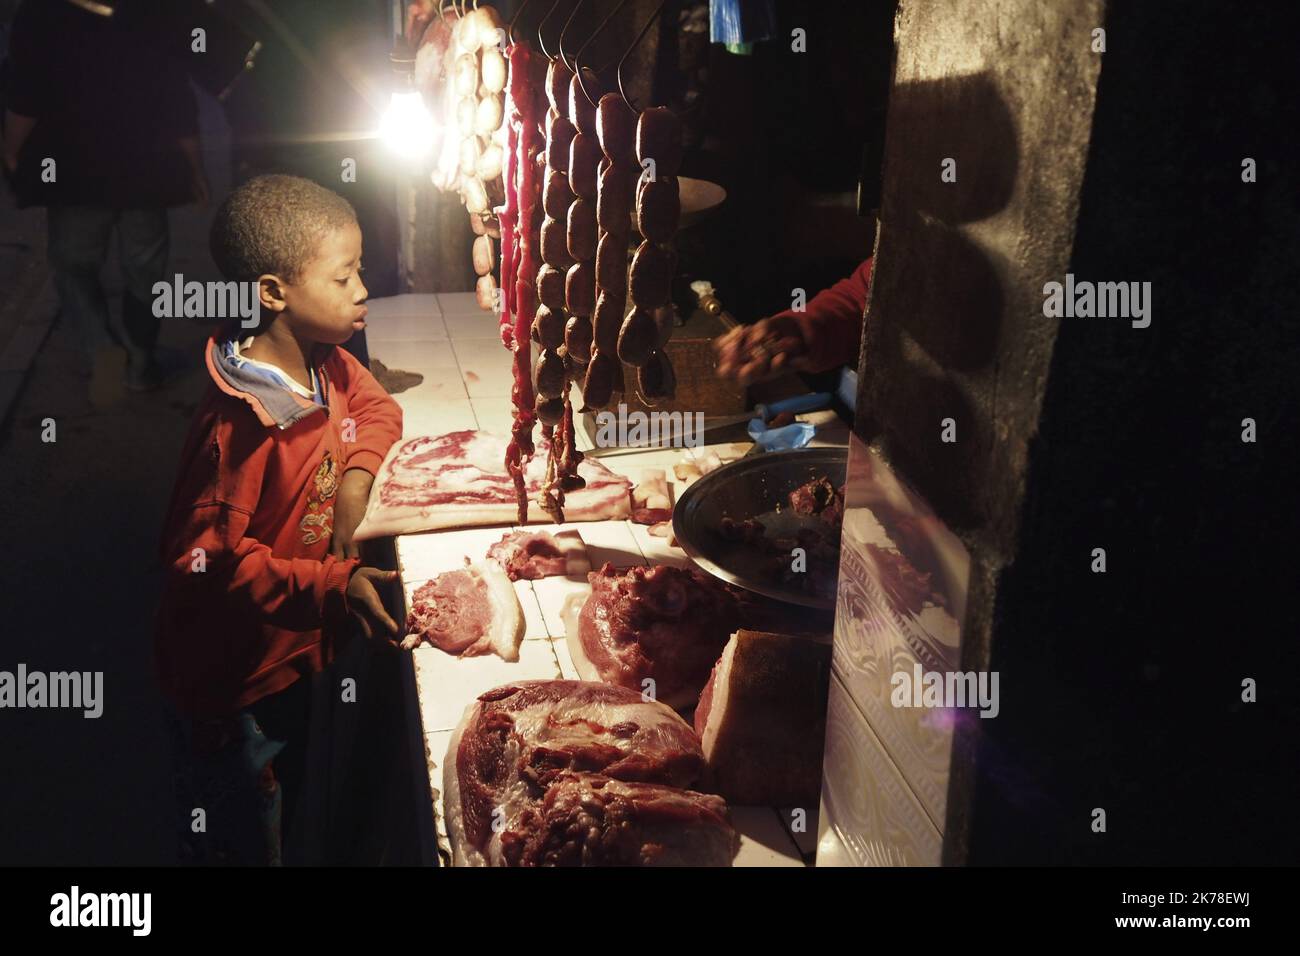 ©Arnaud De Grave / Le Pictorium/MAXPPP - Arnaud De Grave / Le Pictorium - 28/06/2014  -  Madagascar / Antananarivo  -  Boucherie...  / 28/06/2014  -  Madagascar / Antananarivo  -  Butcher... Stock Photo